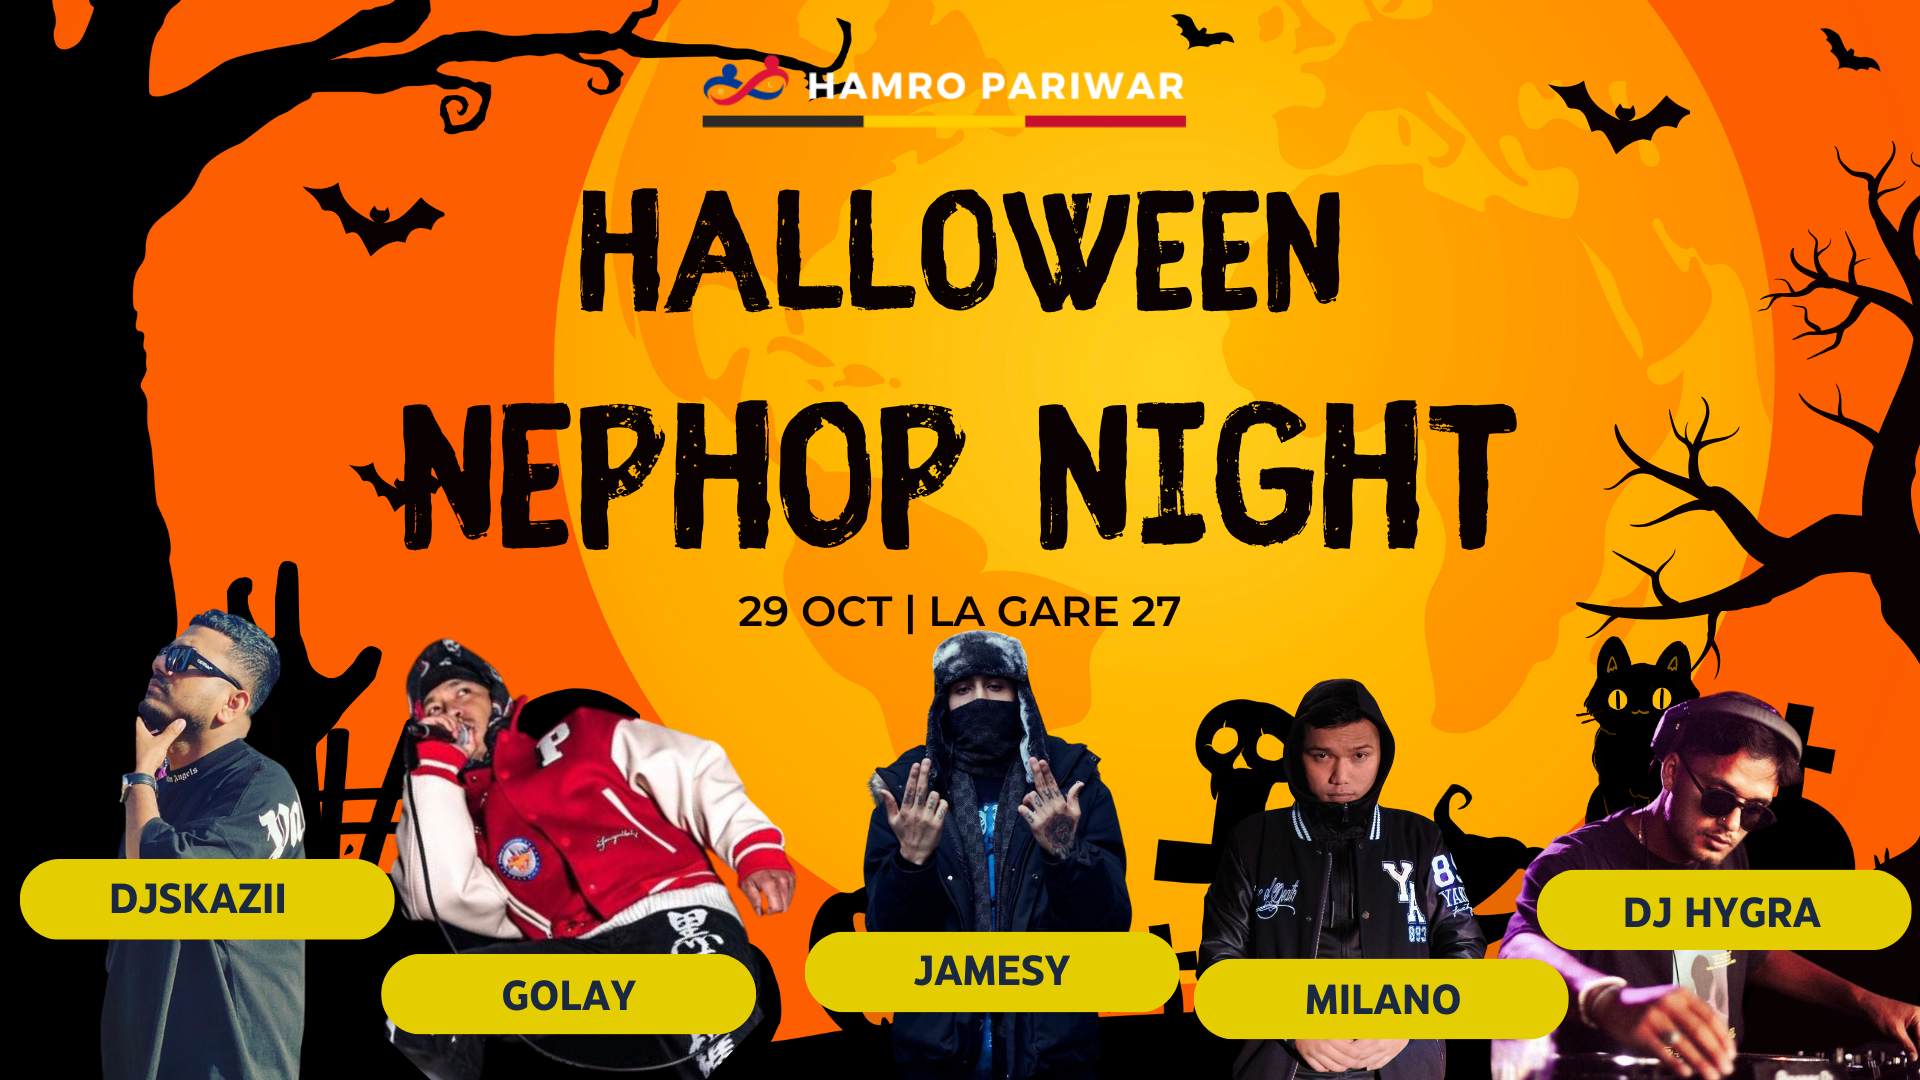 Halloween NEPHOP Night | Hamro Pariwar